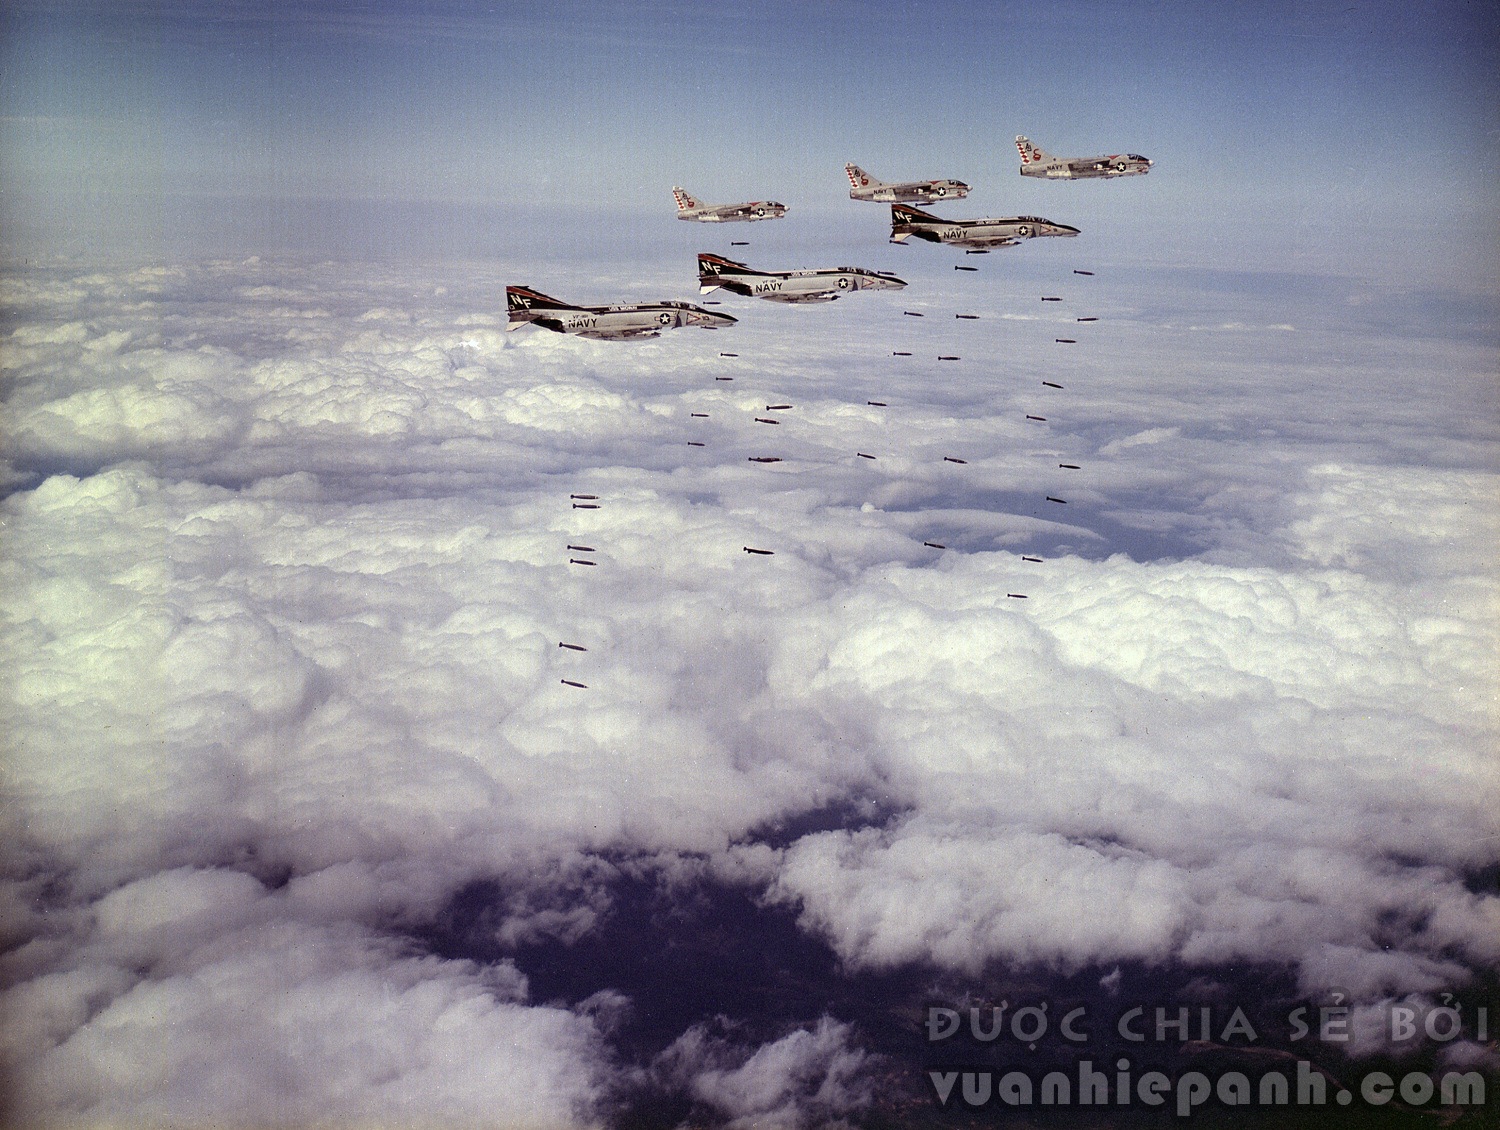 Đội hình F-4 phối hợp với A-7 không kích miền Bắc Việt Nam năm 1972.